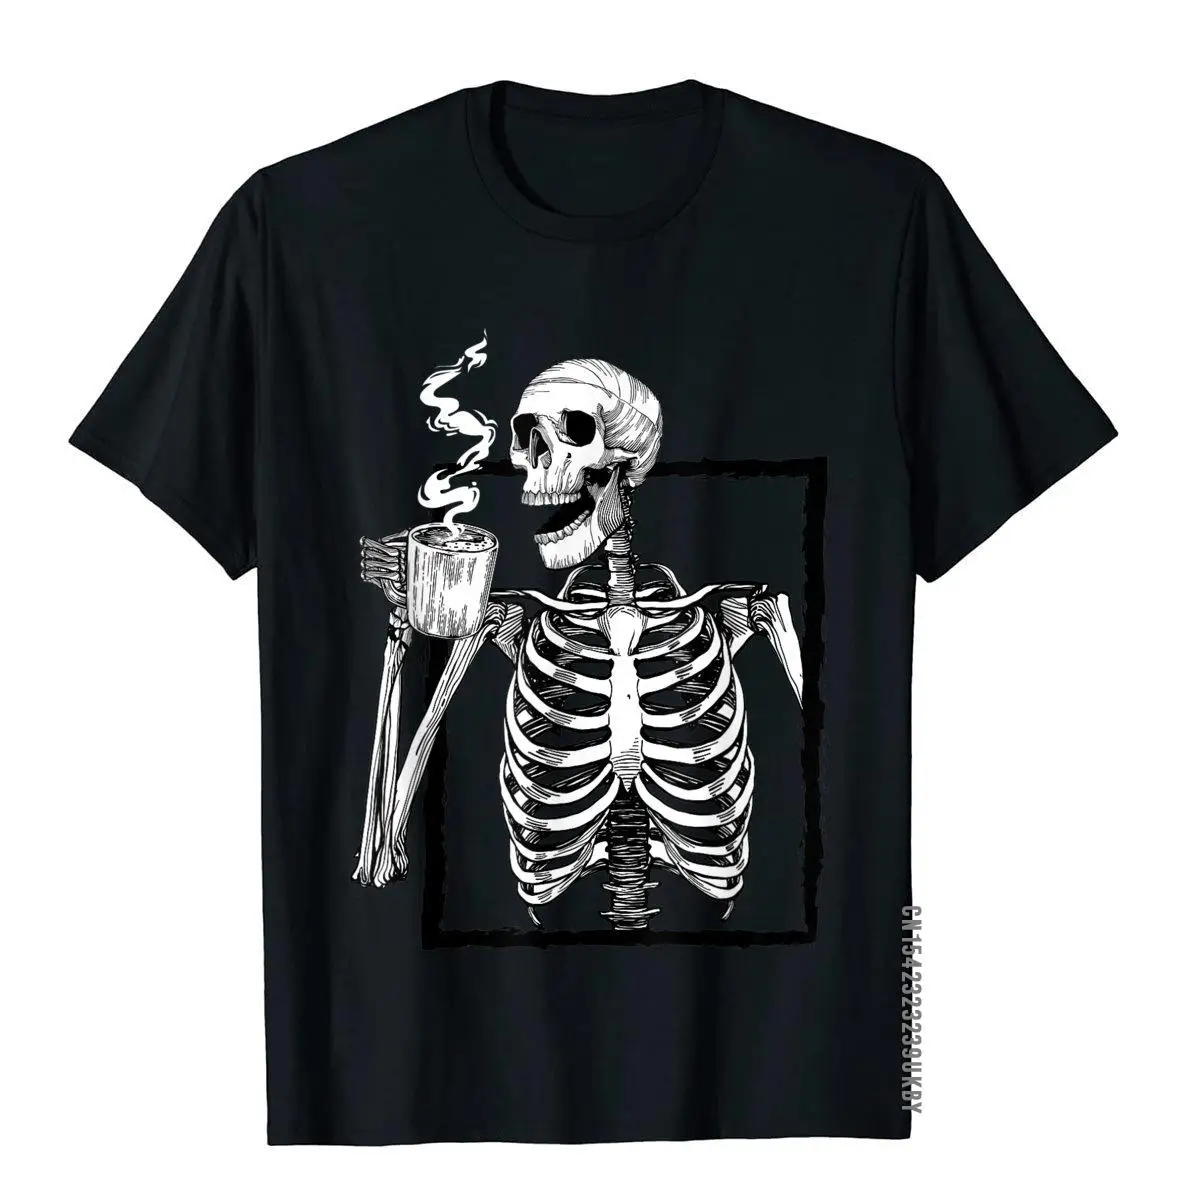 

Забавная футболка со скелетом, питьевой кофе, забавная футболка с черепом на Хэллоуин, хлопковые топы нормальной семьи, футболка в английском стиле для мужчин